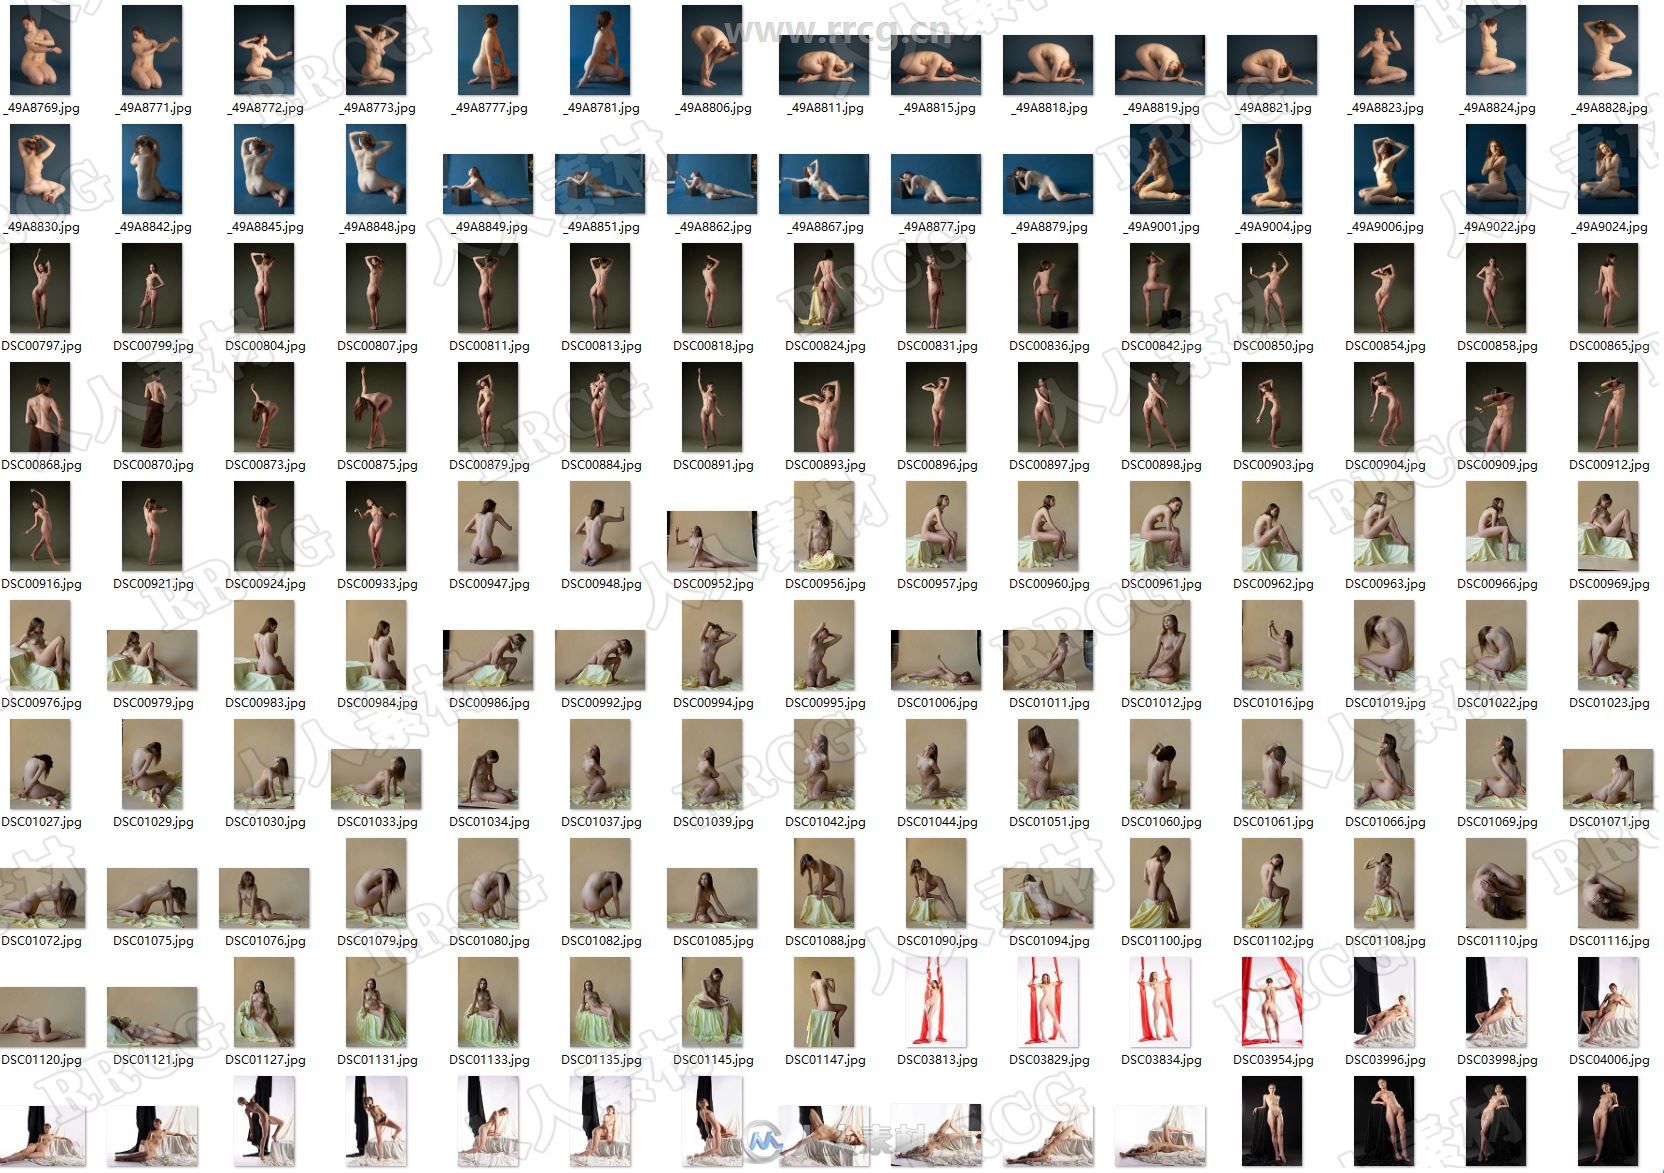 300张女性模特人体姿势造型艺术参考高清照片合集